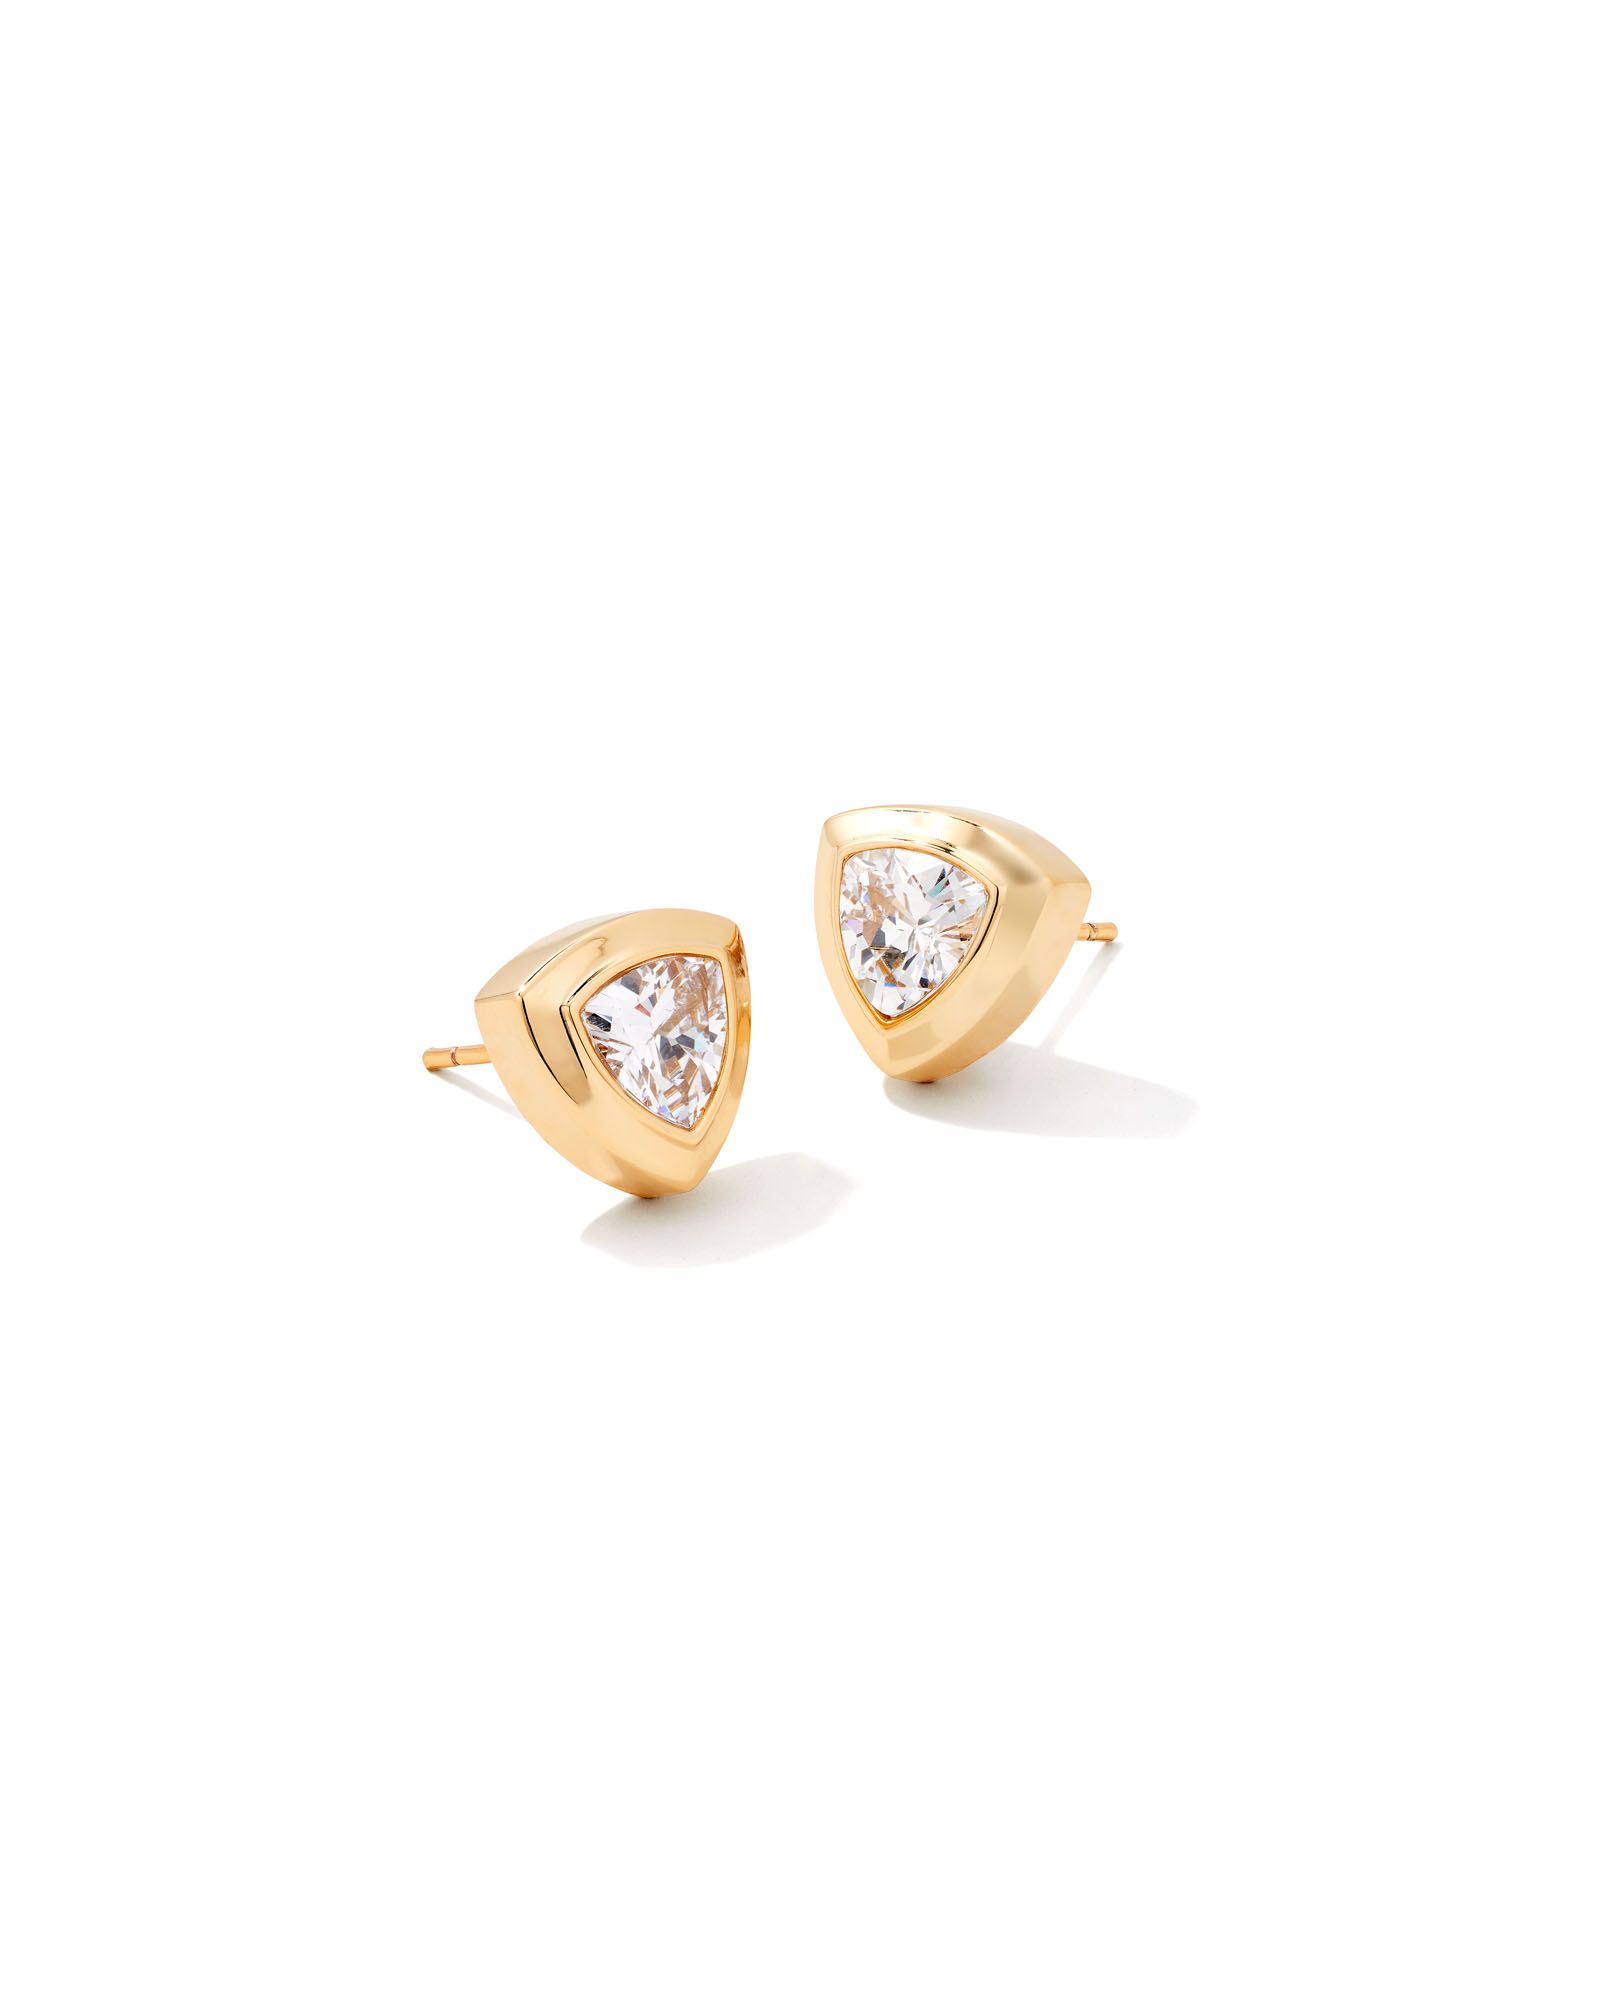 Arden Gold Stud Earrings in White Crystal | Kendra Scott | Kendra Scott